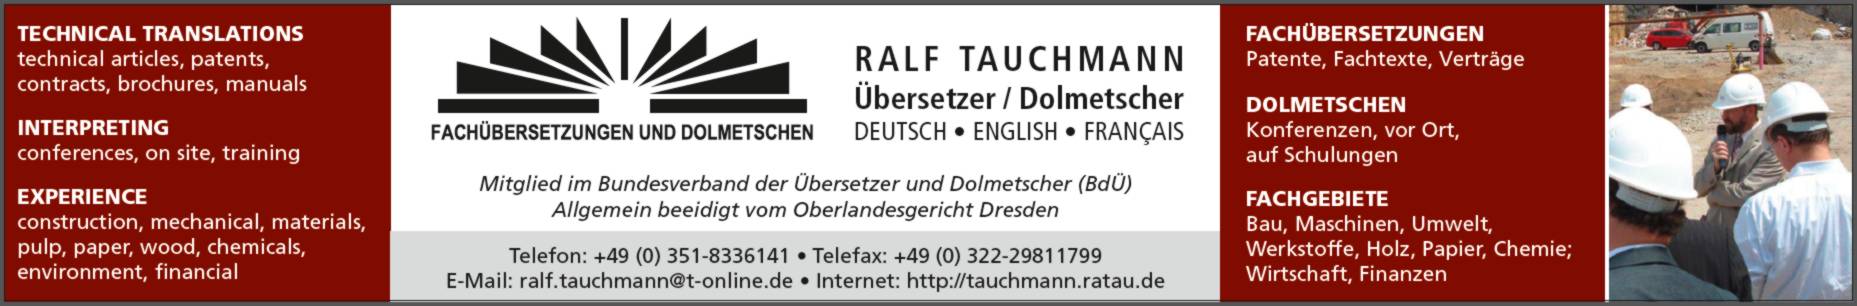 Ralf Tauchmann Fachübersetzungen